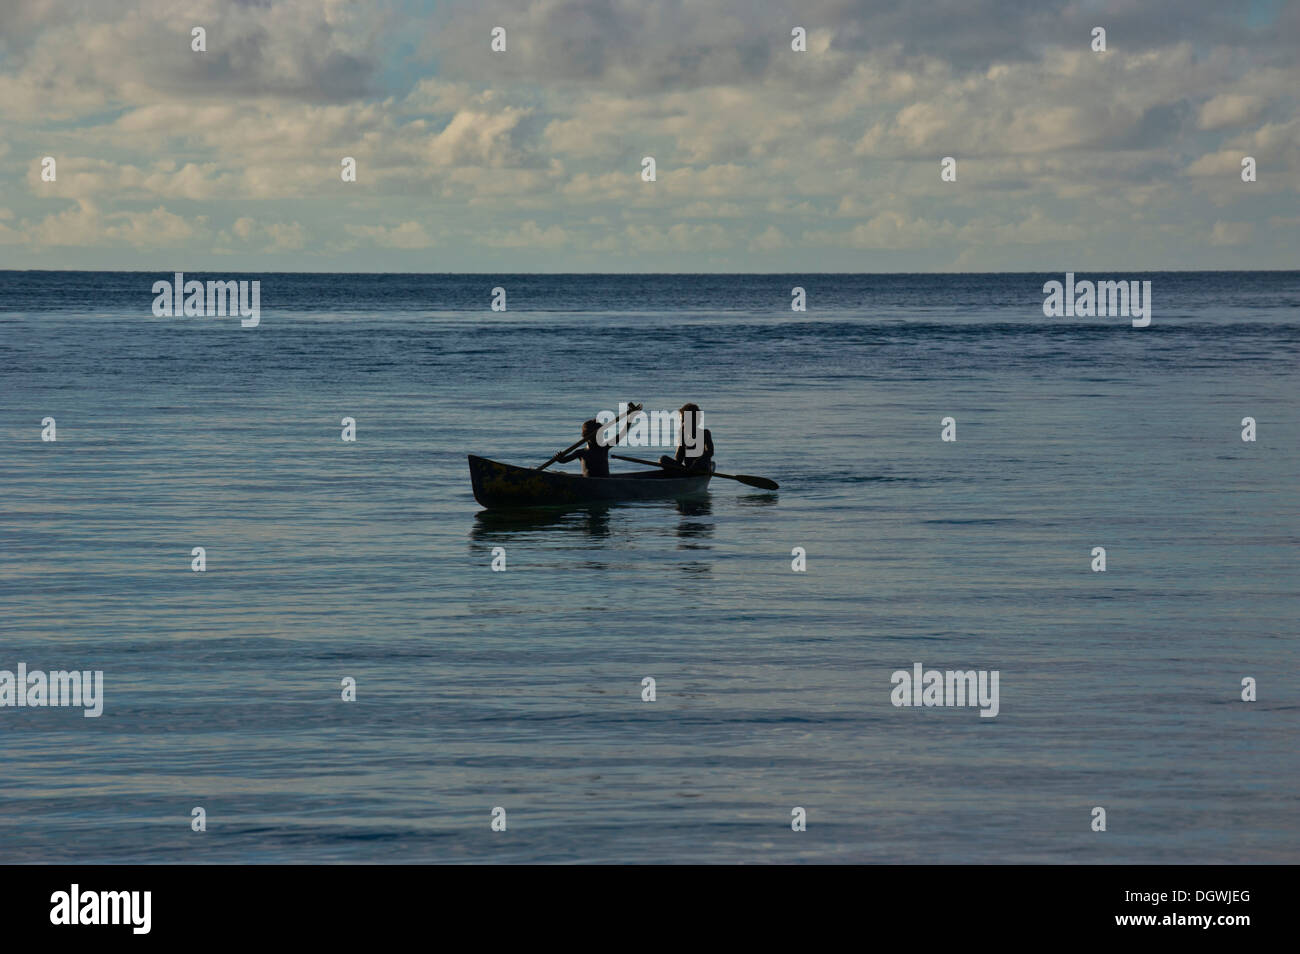 Los muchachos en una canoa en la laguna de Marovo, retroiluminación, en la provincia occidental, las Islas Salomón Foto de stock